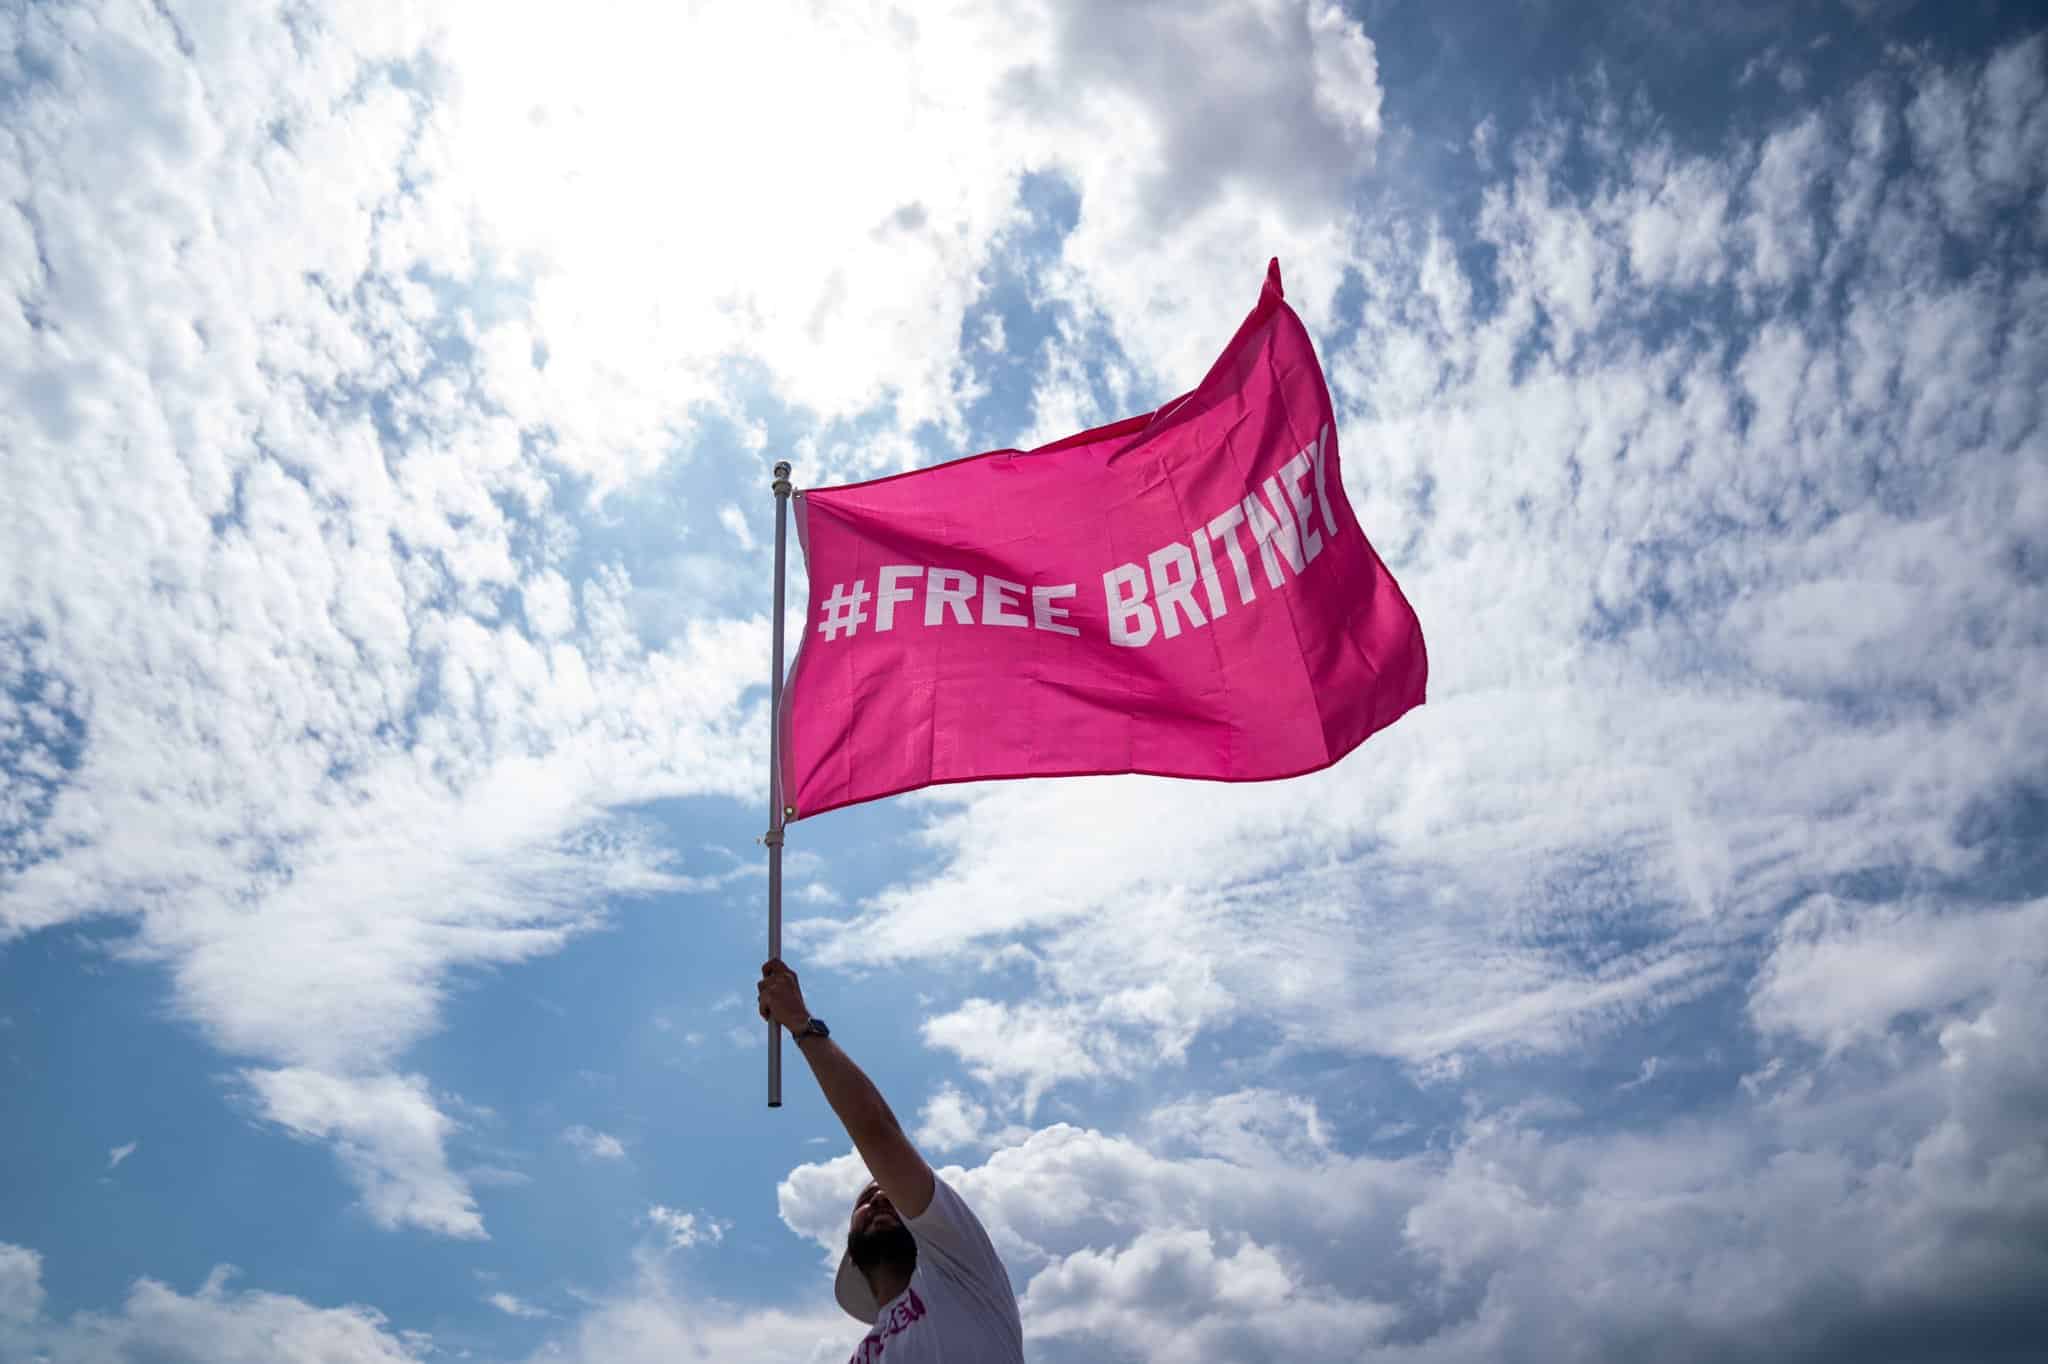 Fan de Britney alzando la bandera con el mensaje "Free Britney" el día de su libertad.